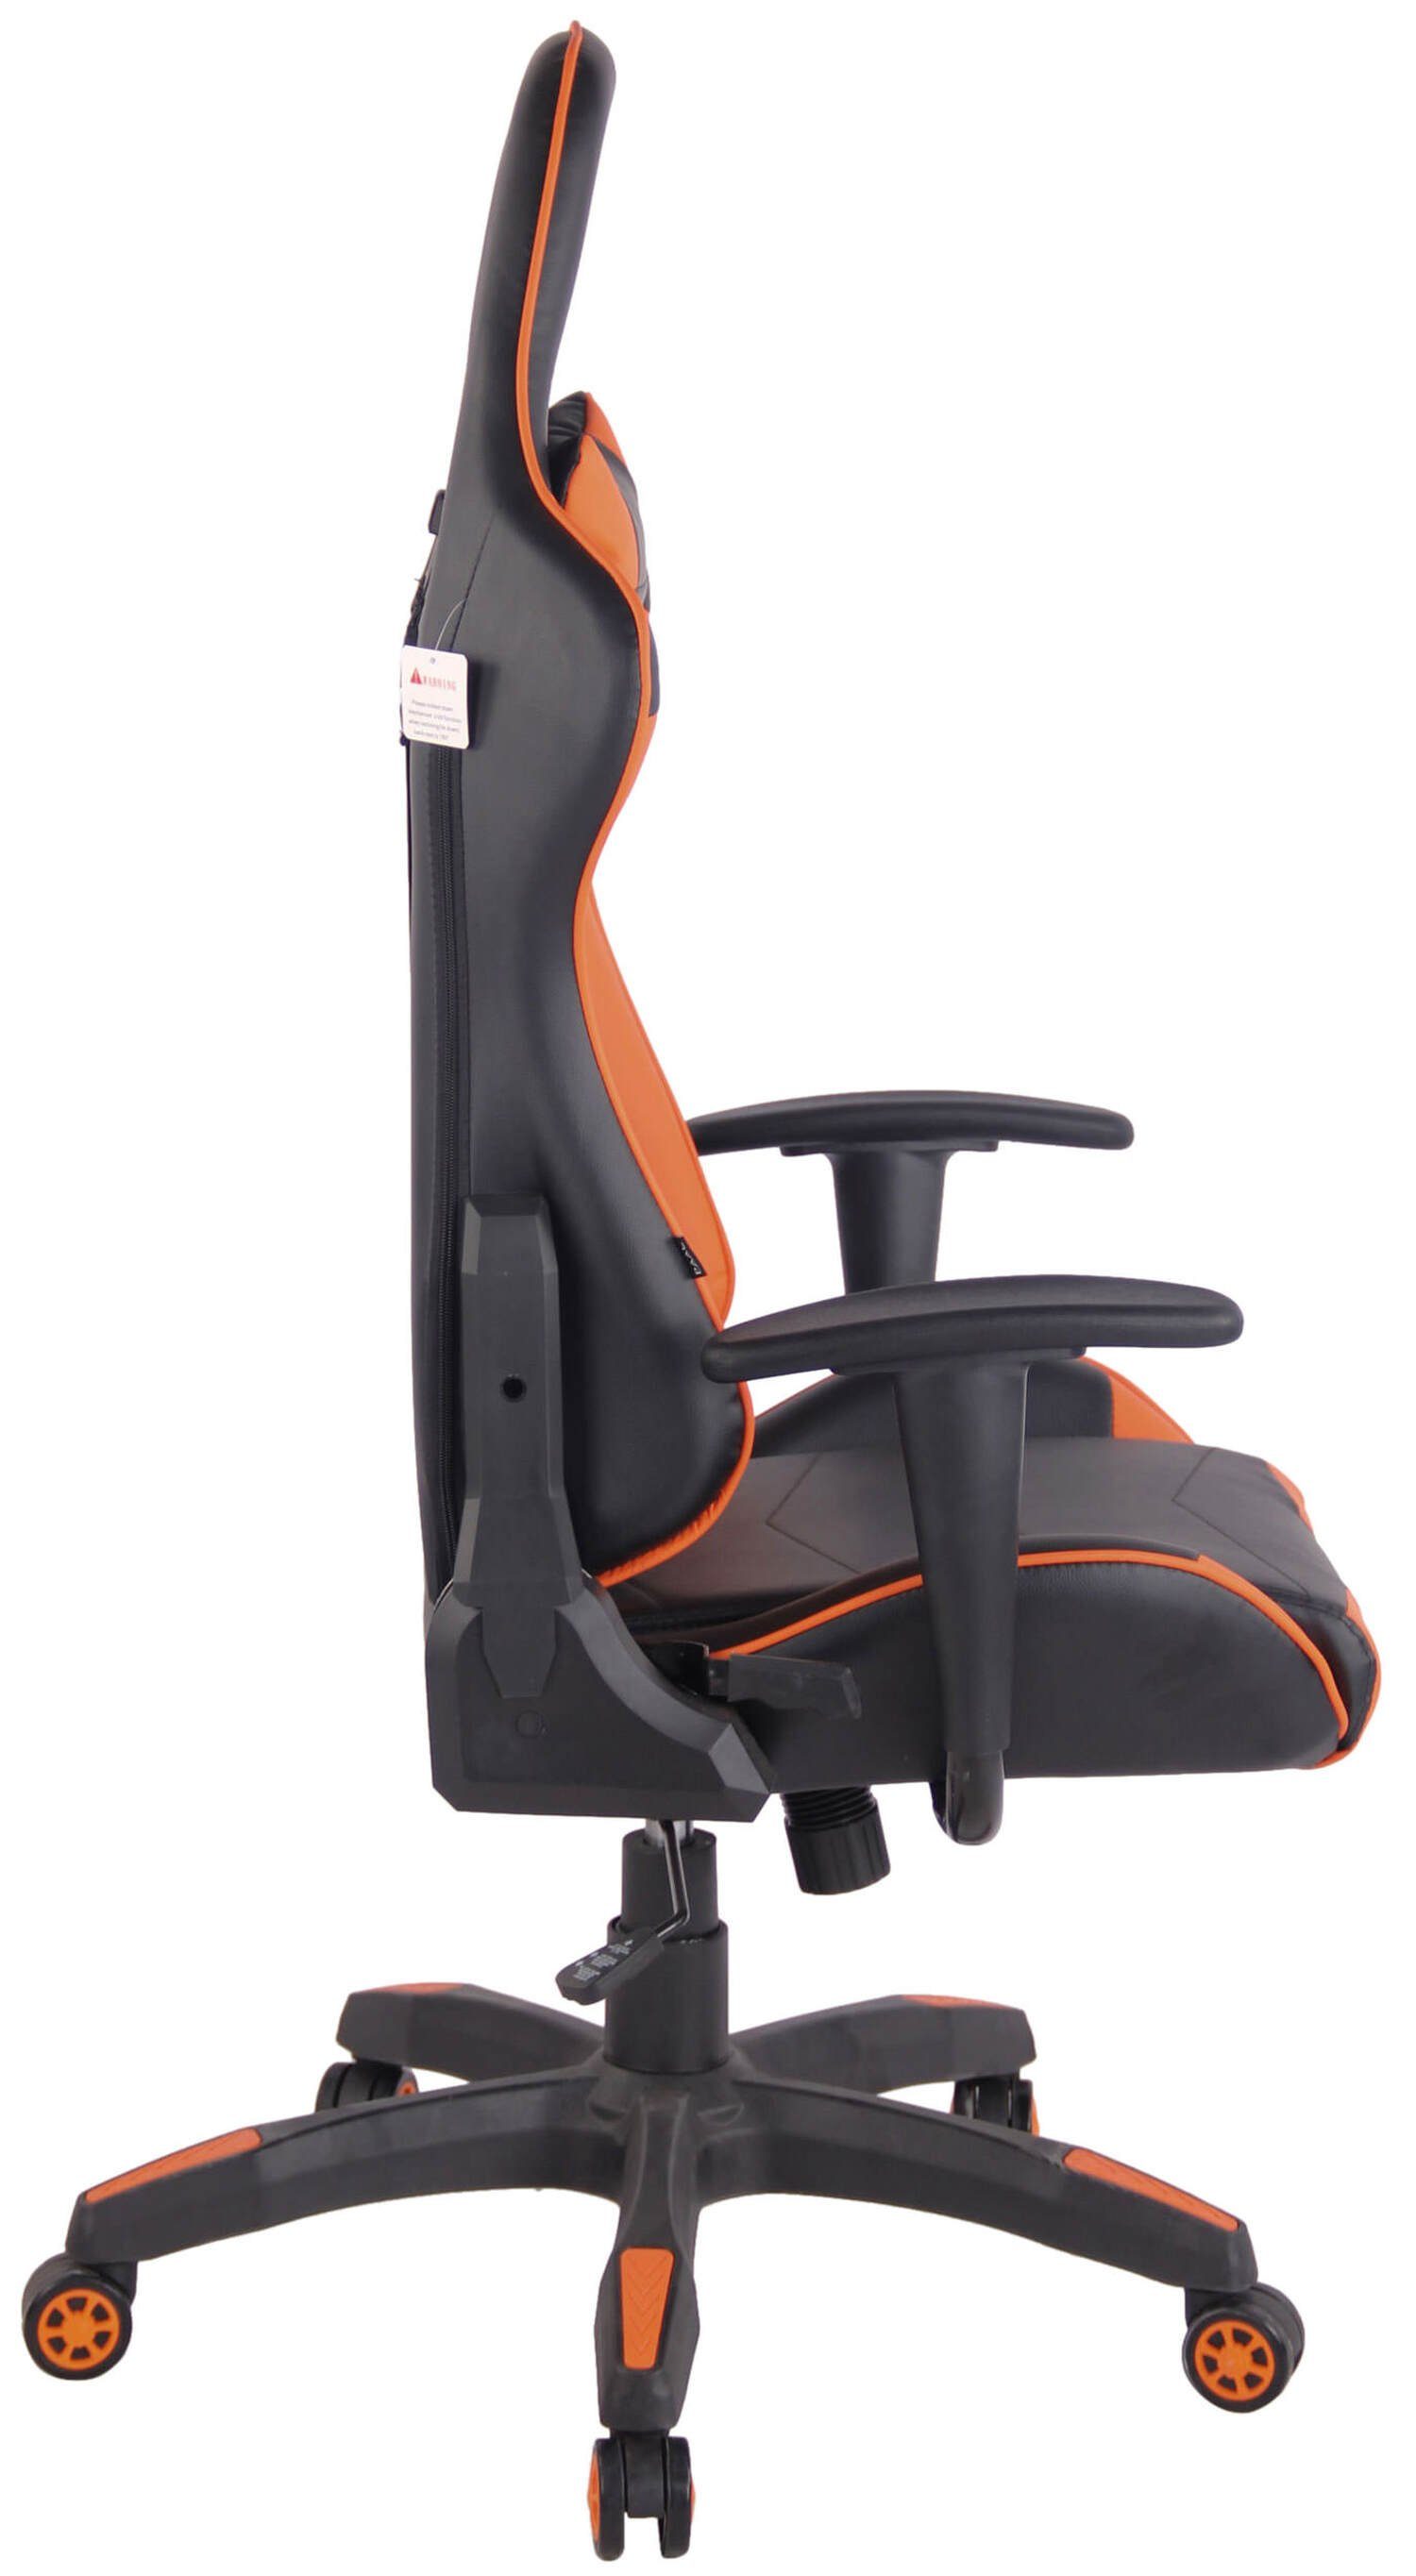 Racingstuhl, 360° mit schwarz Gaming-Stuhl (Schreibtischstuhl, Chefsessel), TPFLiving - und Kunststoff höhenverstellbar drehbar Gestell: - Sitzfläche: bequemer schwarz/orange Mirage Gamingstuhl, Rückenlehne Drehstuhl, Kunstleder